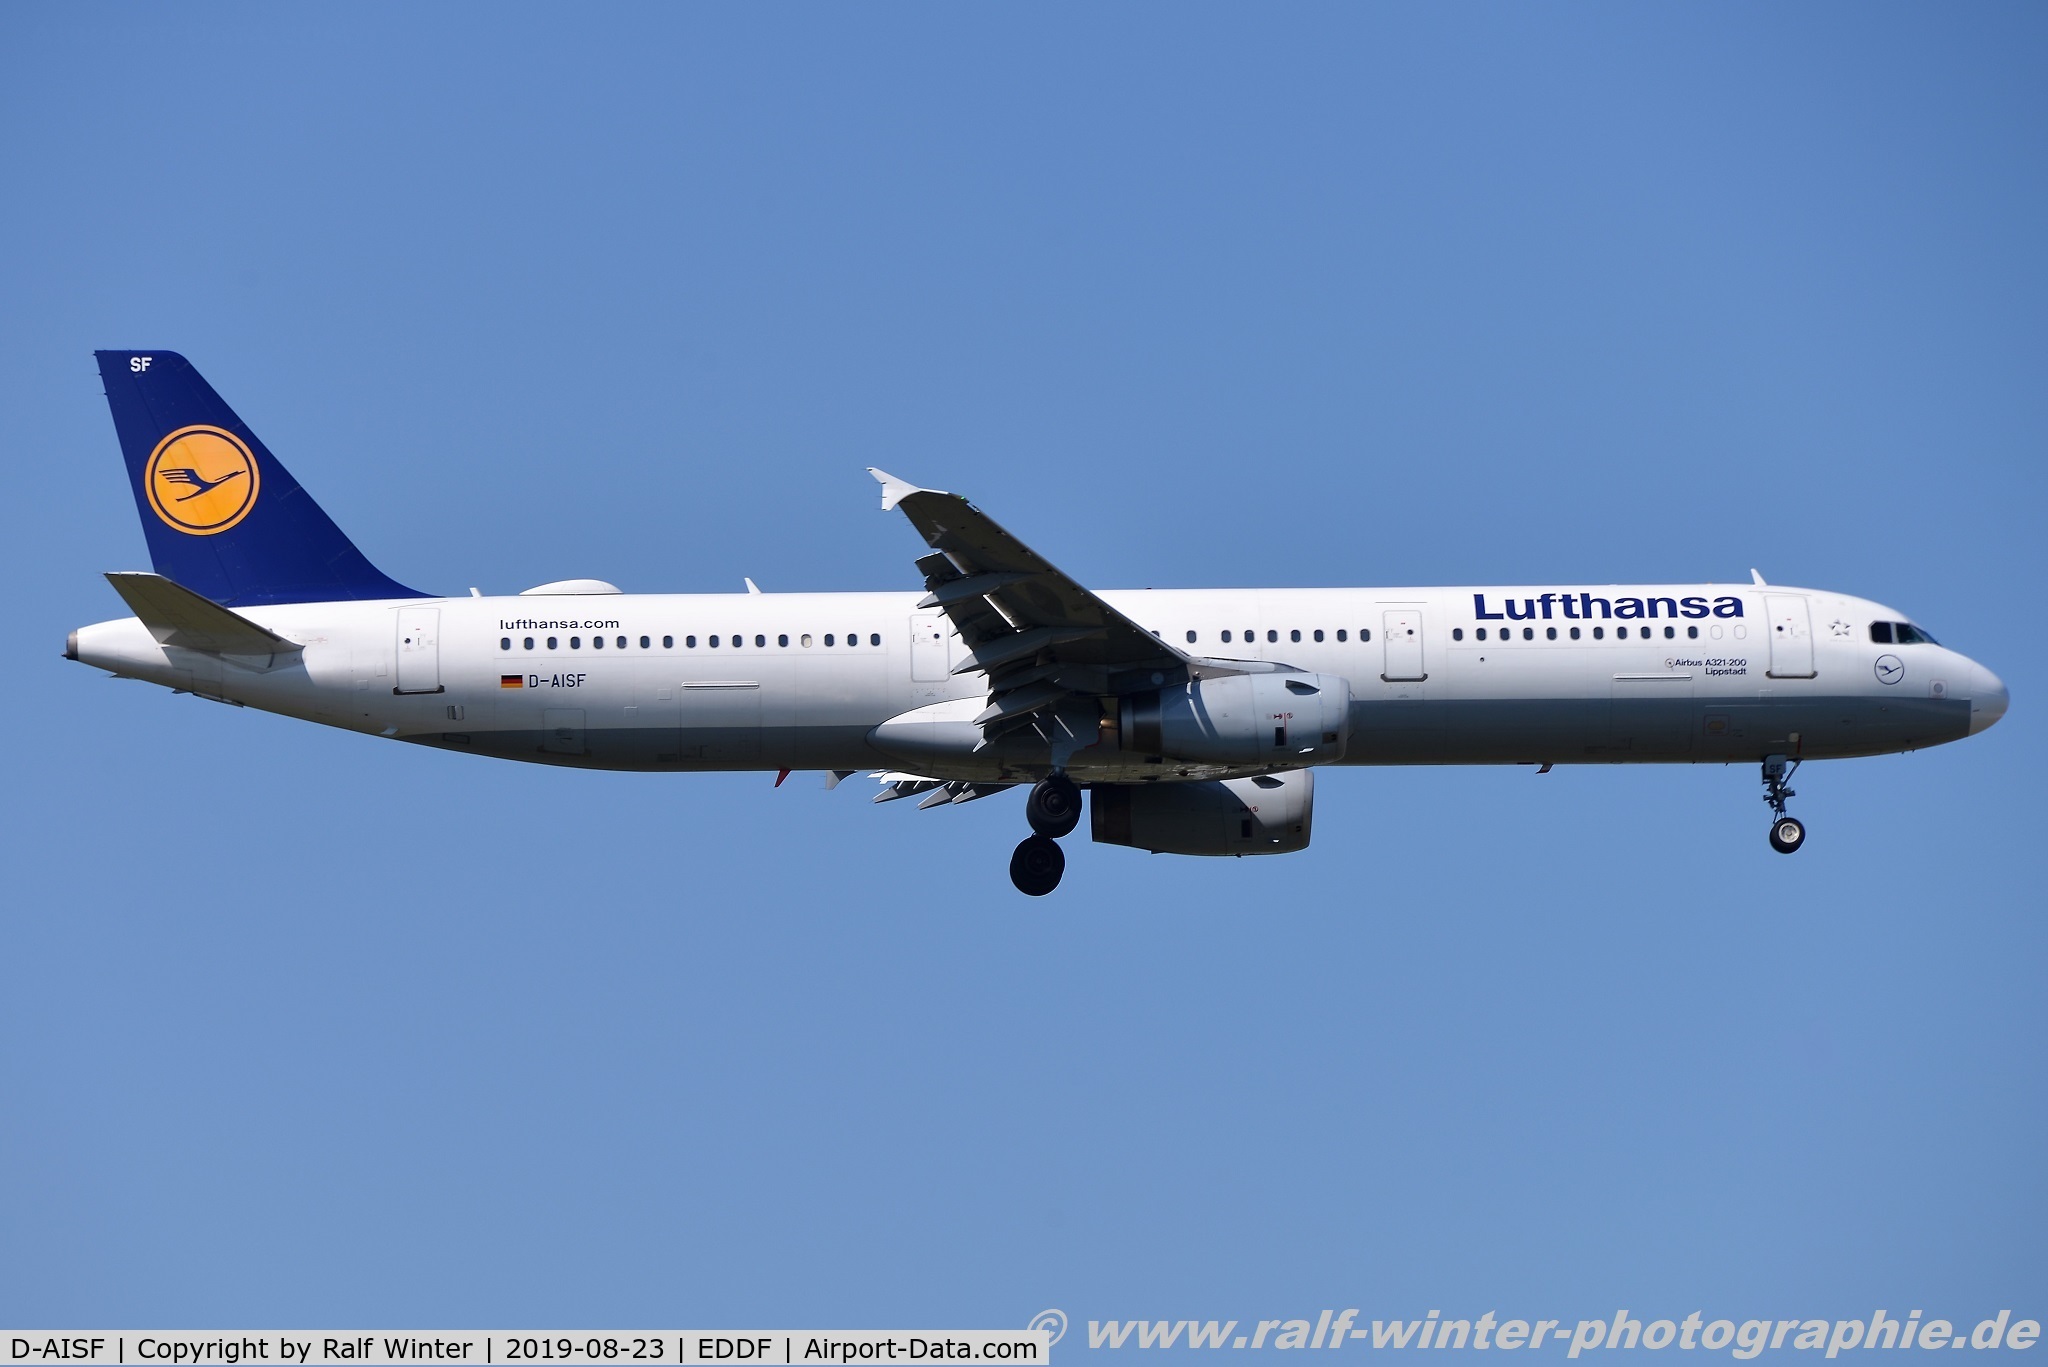 D-AISF, 2000 Airbus A321-231 C/N 1260, Airbus A321-231 - LH DLH Lufthansa 'Lippstadt' - 1260 - D-AISF - 23.08.2019 - FRA